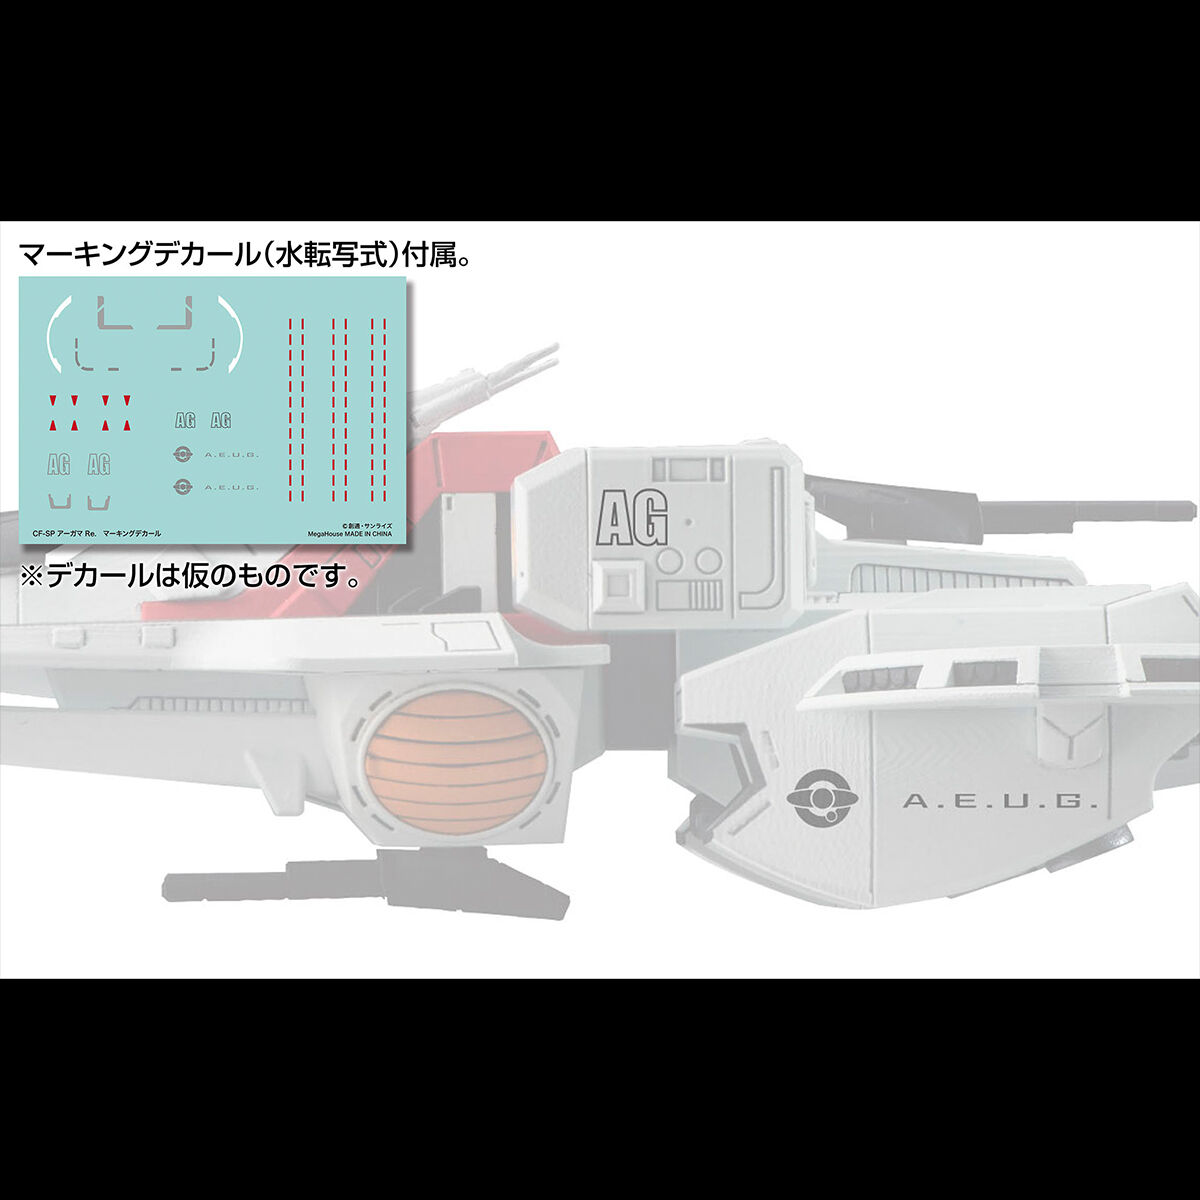 コスモフリートスペシャル『アーガマRe.』機動戦士Zガンダム 完成品モデル-010